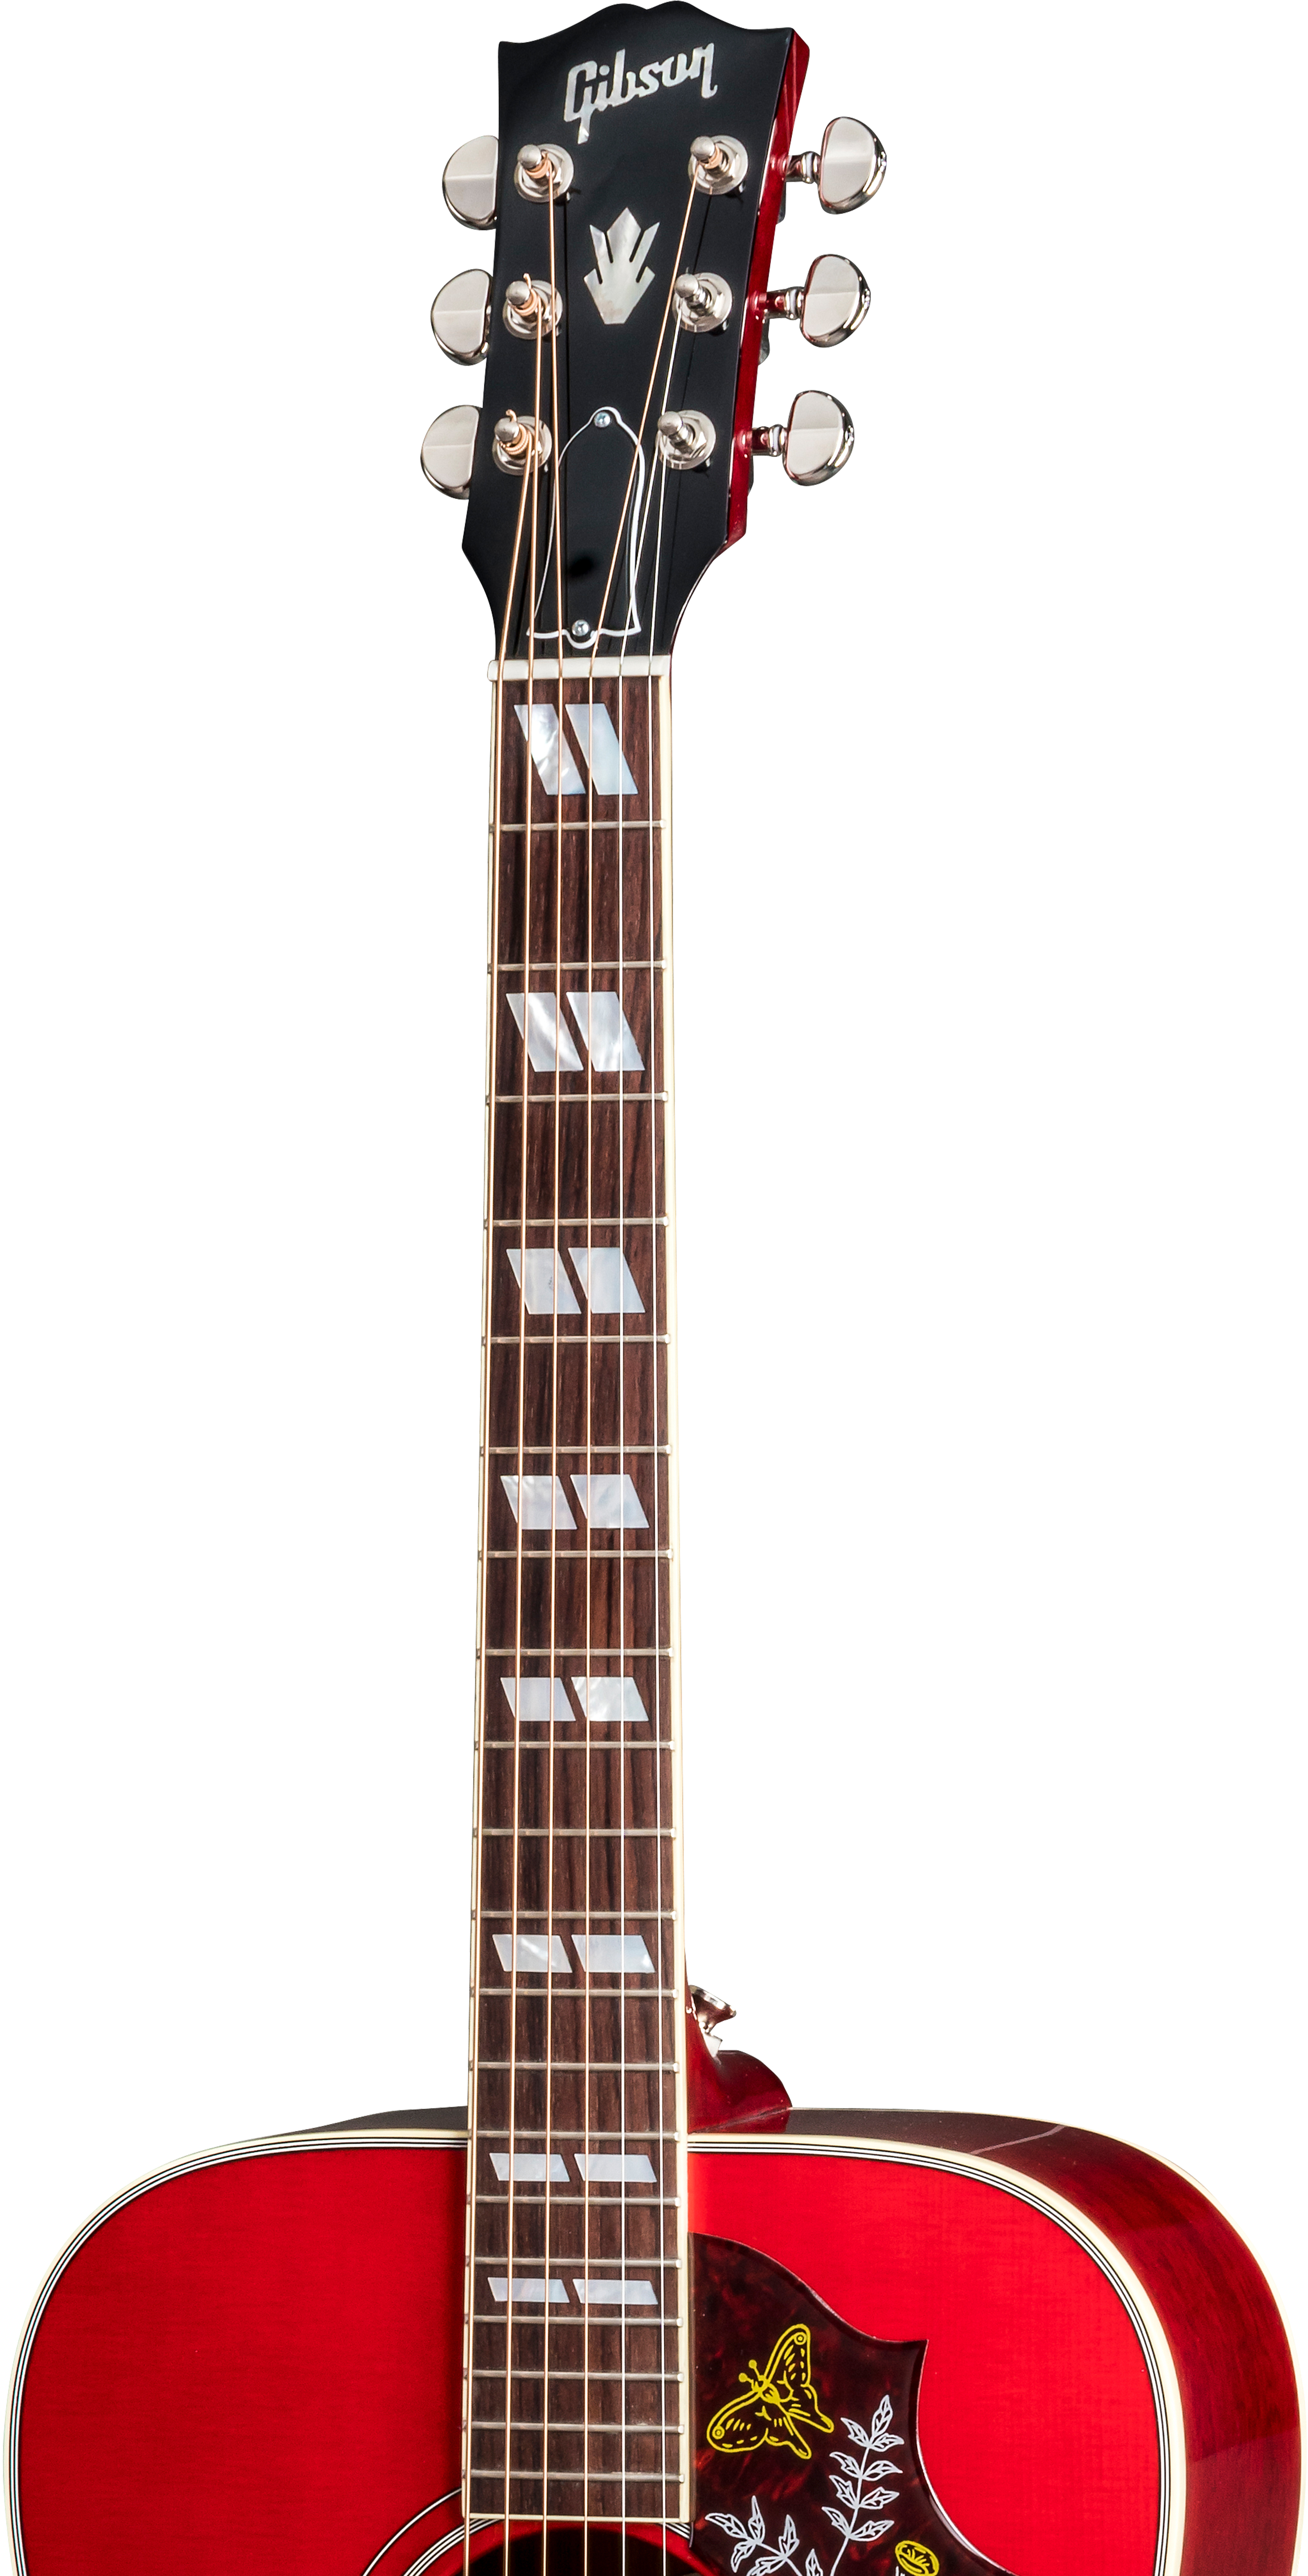 Gibson Hummingbird 2019 Dreadnought Epicea Acajou Rw - Vintage Cherry Sunburst - Acoustic guitar & electro - Variation 2